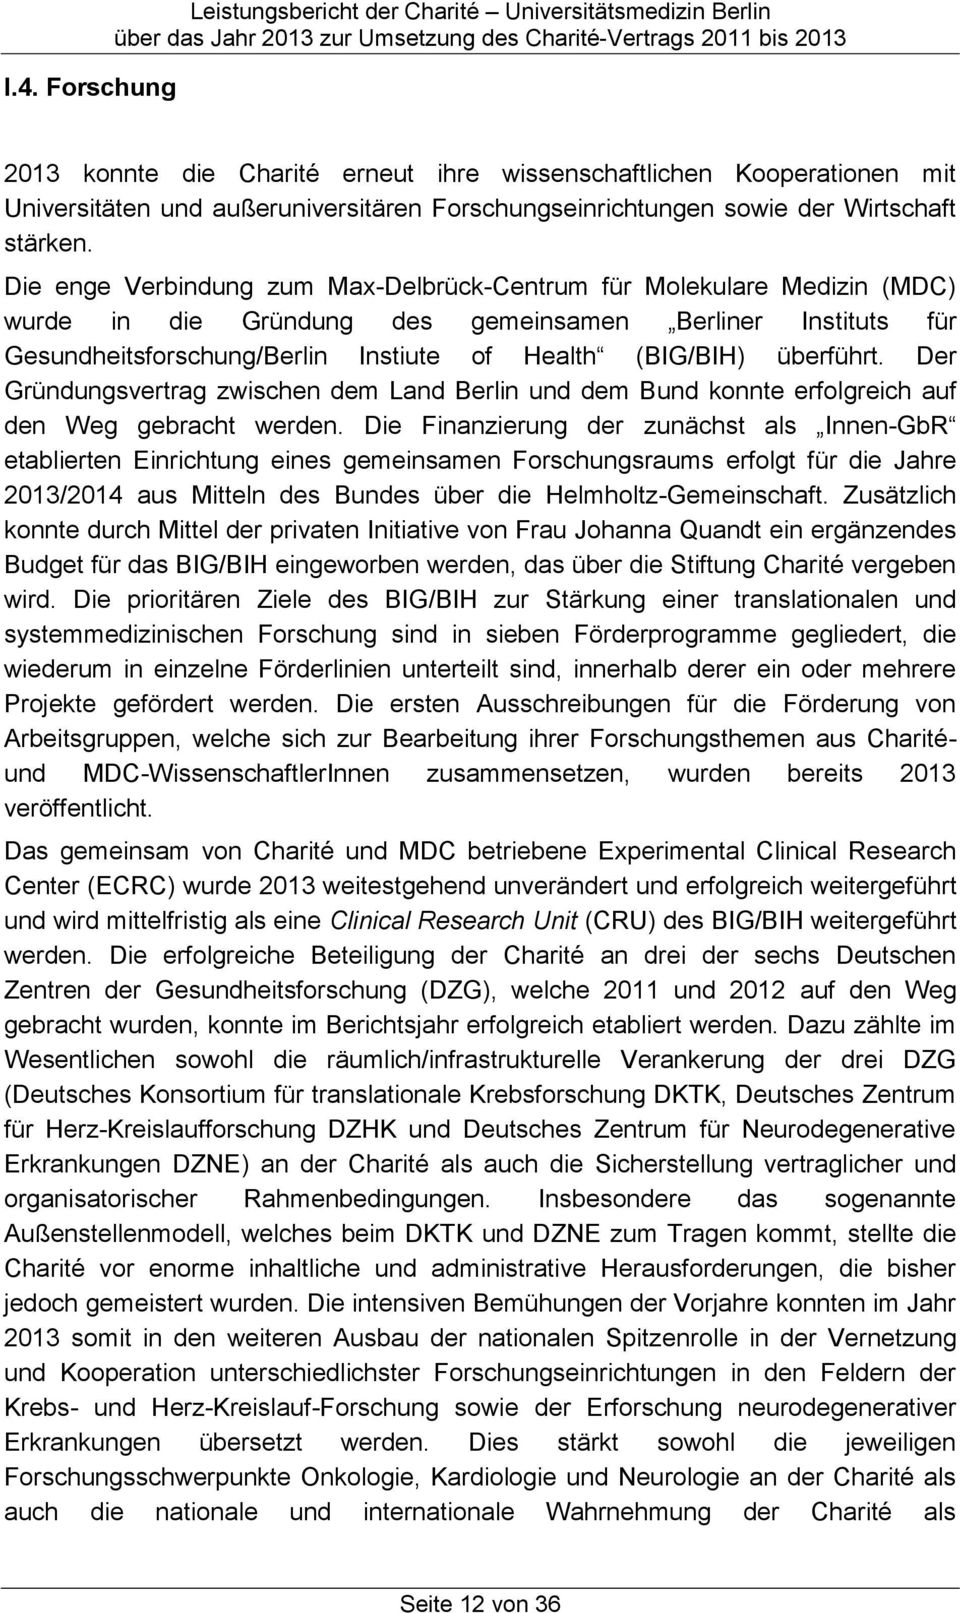 Die enge Verbindung zum Max-Delbrück-Centrum für Molekulare Medizin (MDC) wurde in die Gründung des gemeinsamen Berliner Instituts für Gesundheitsforschung/Berlin Instiute of Health (BIG/BIH)